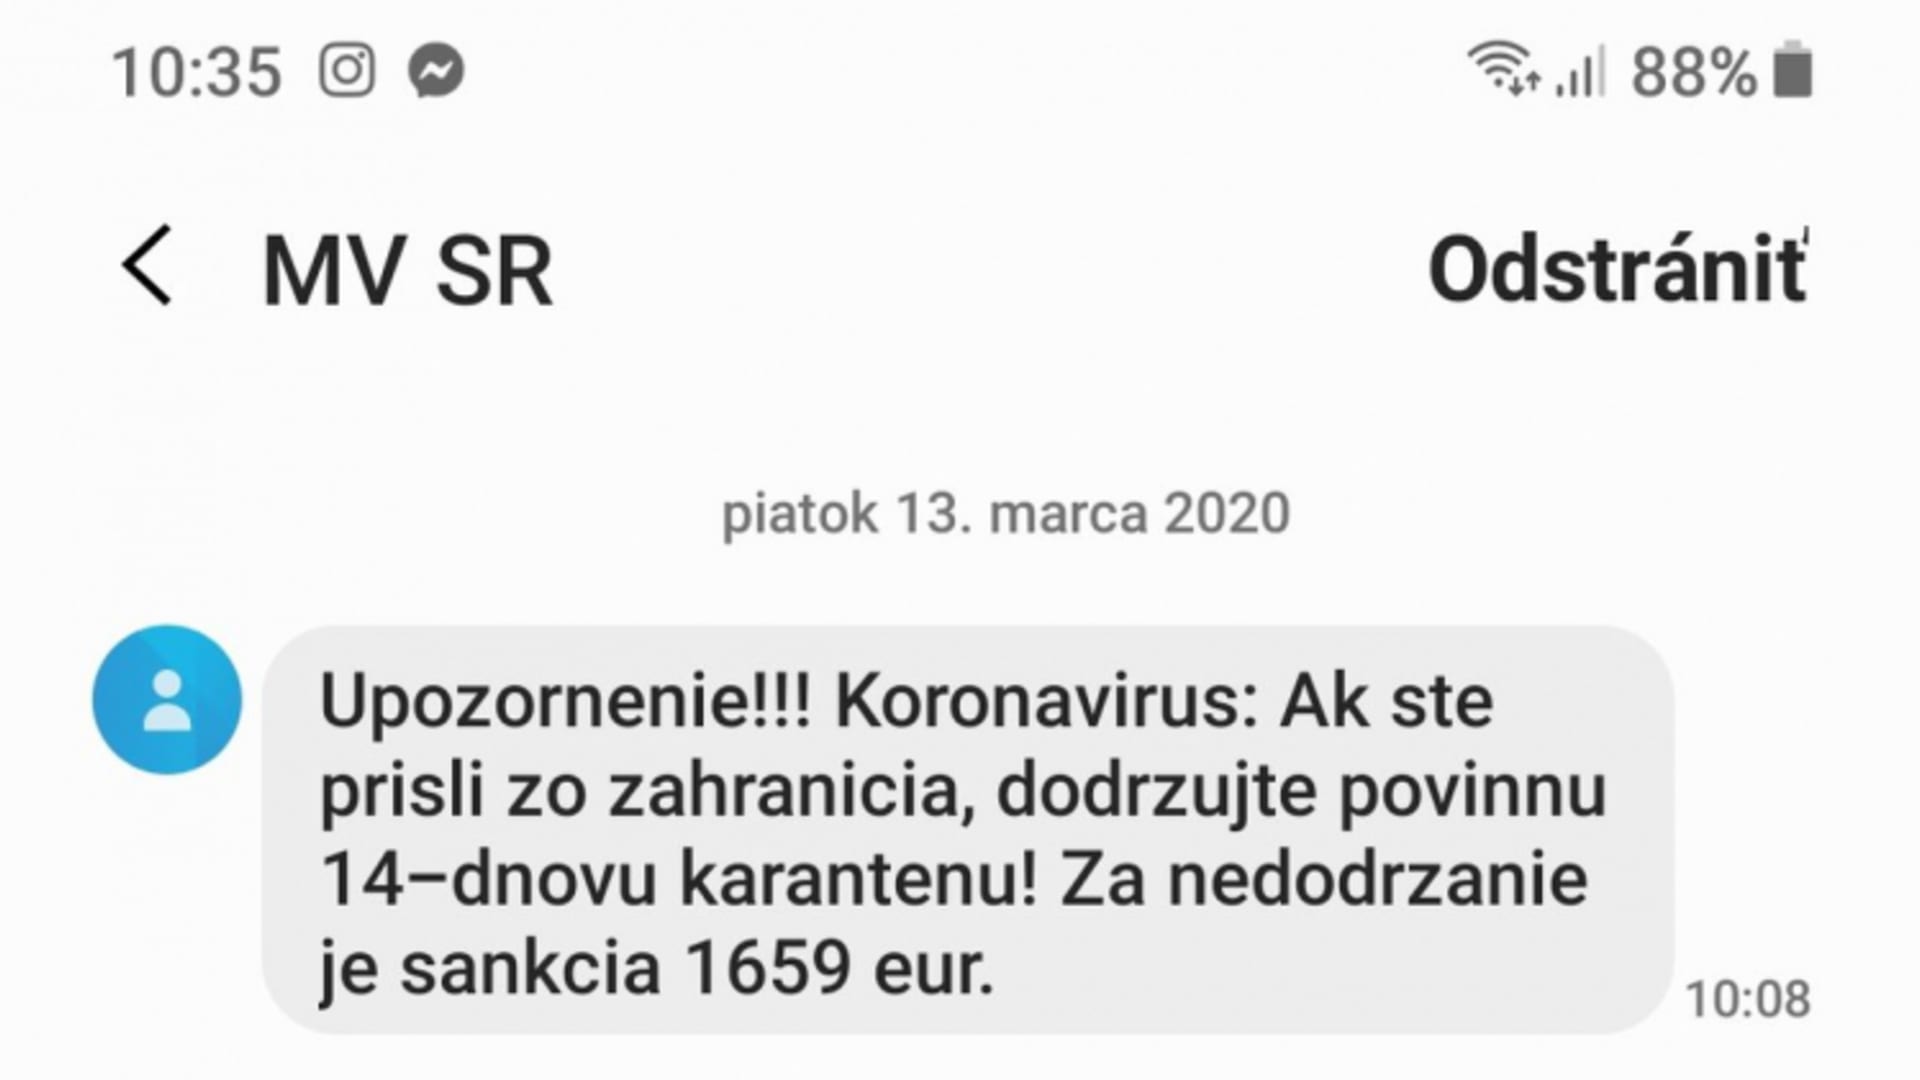 sms-zpráva upozorňují Slováky